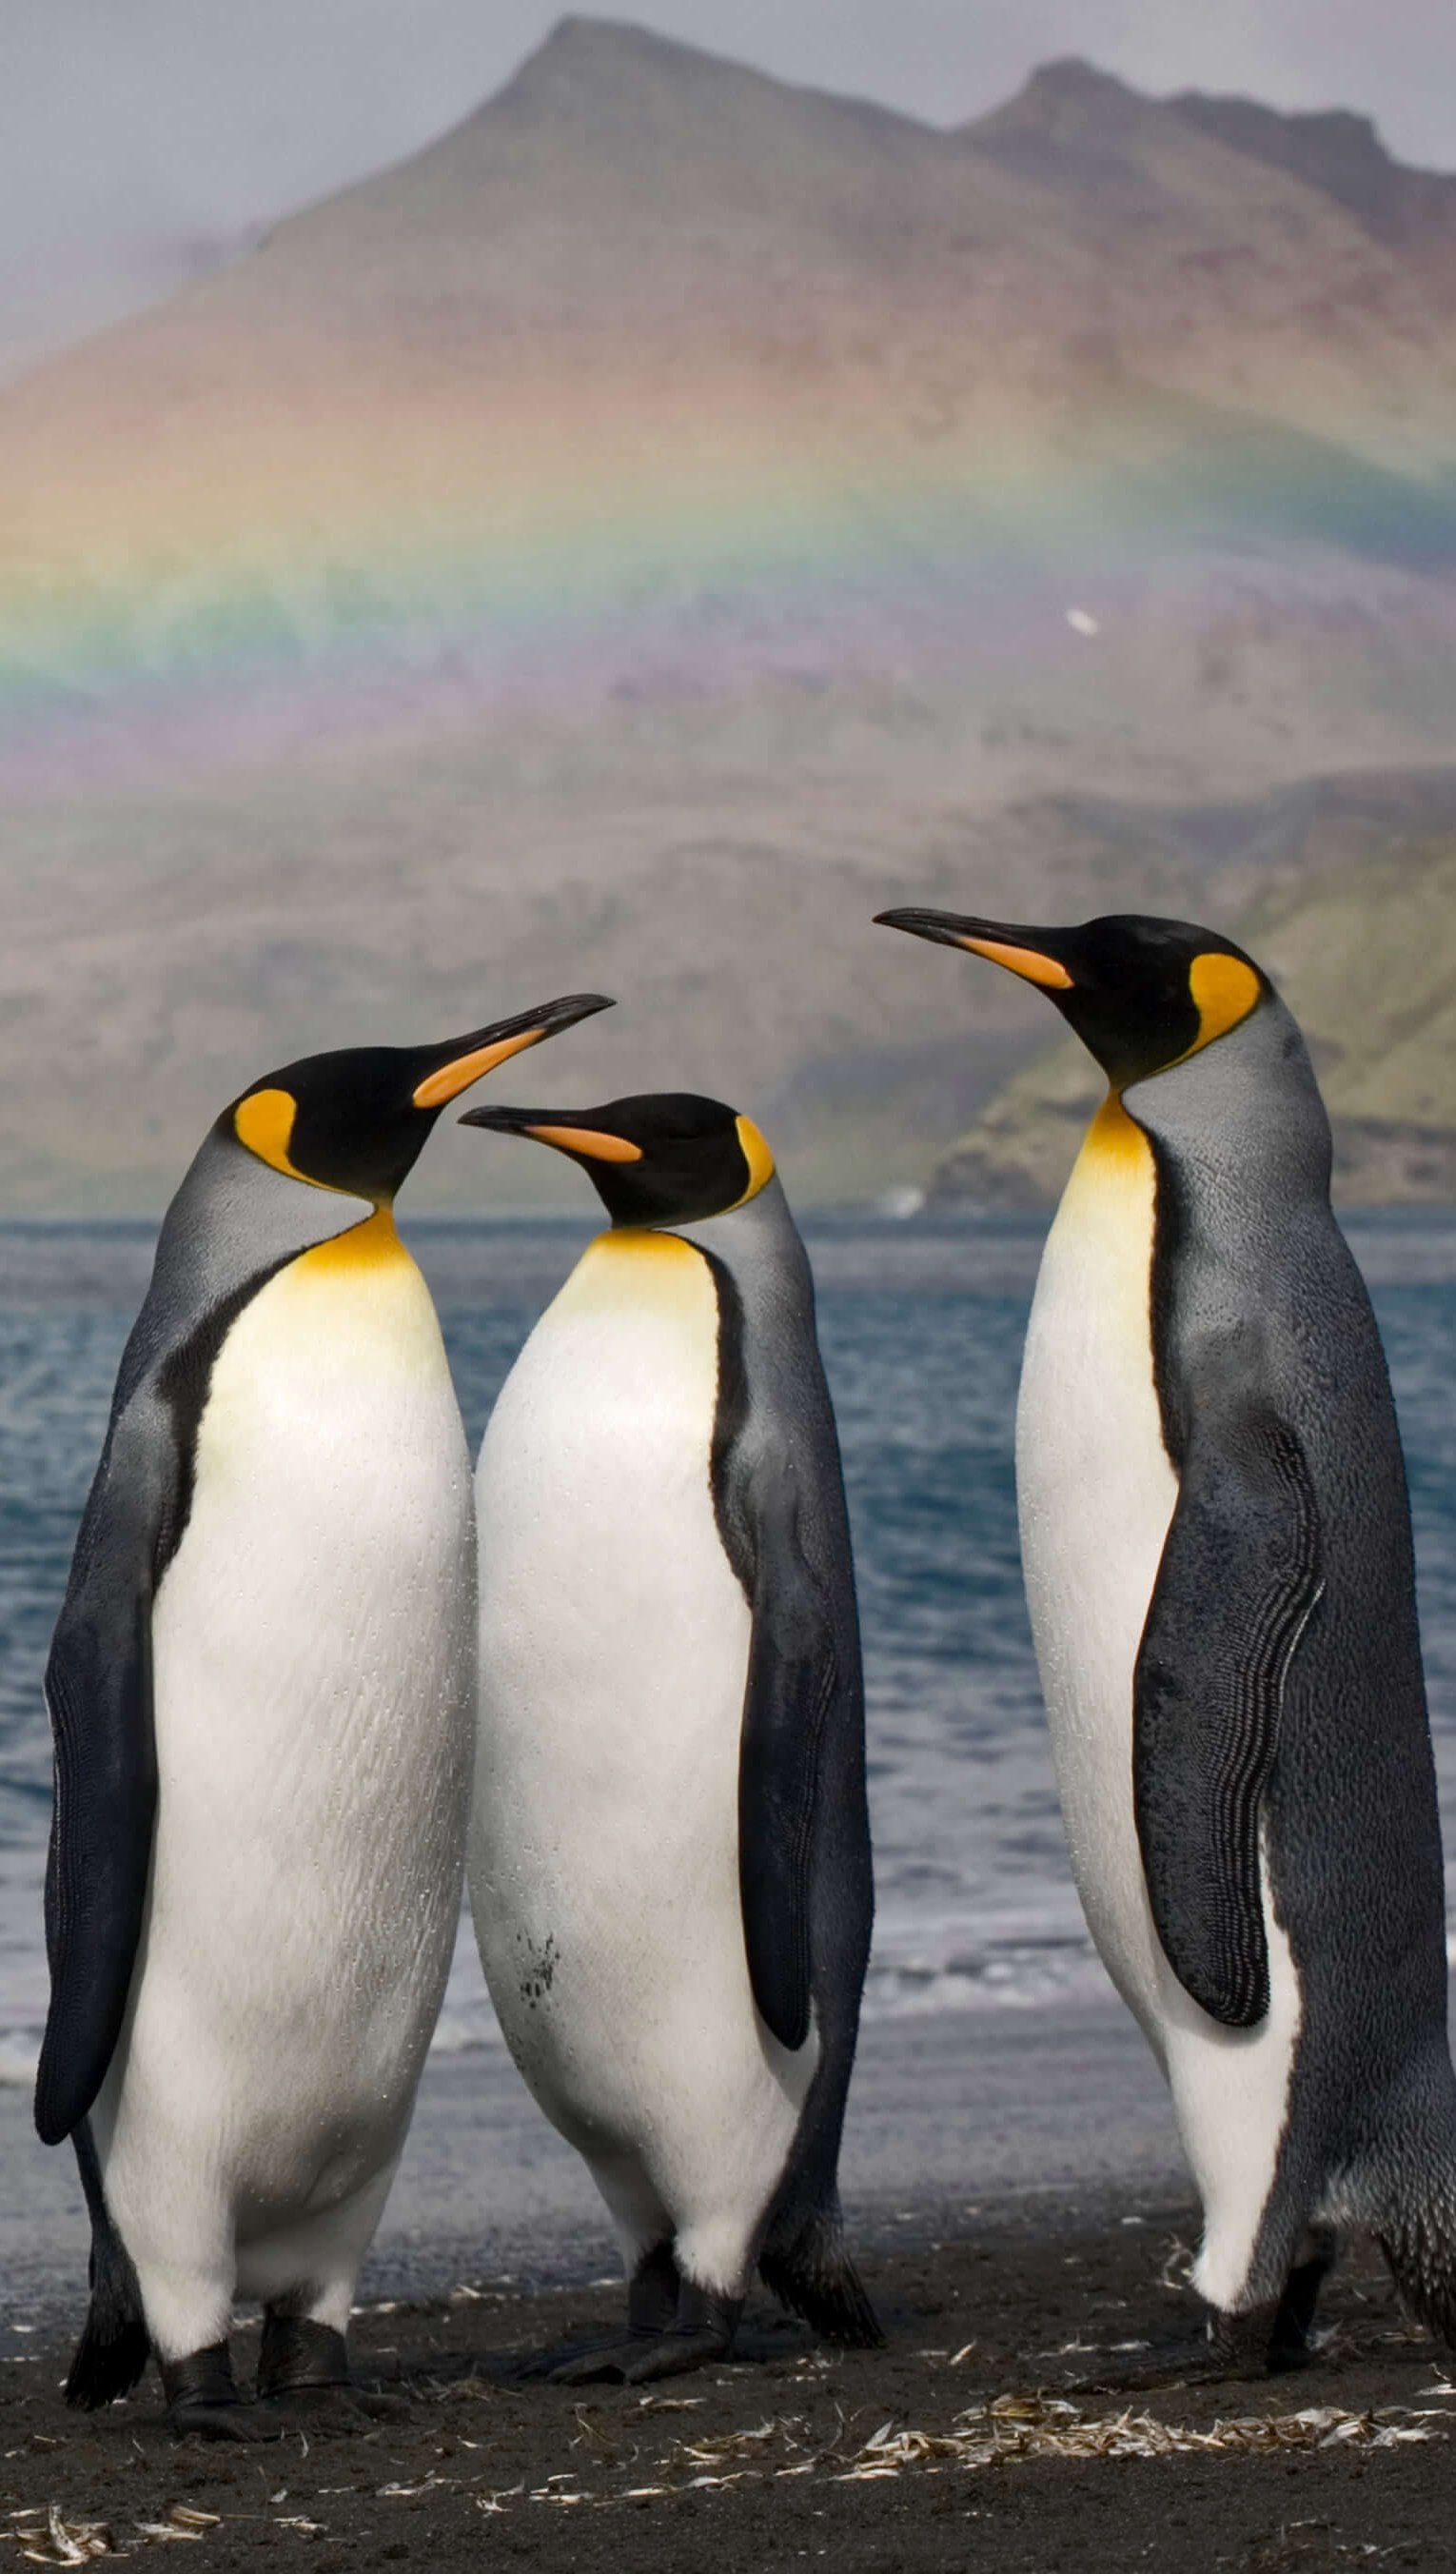 Fondos de pantalla Pingüinos con arcoiris de fondo Vertical